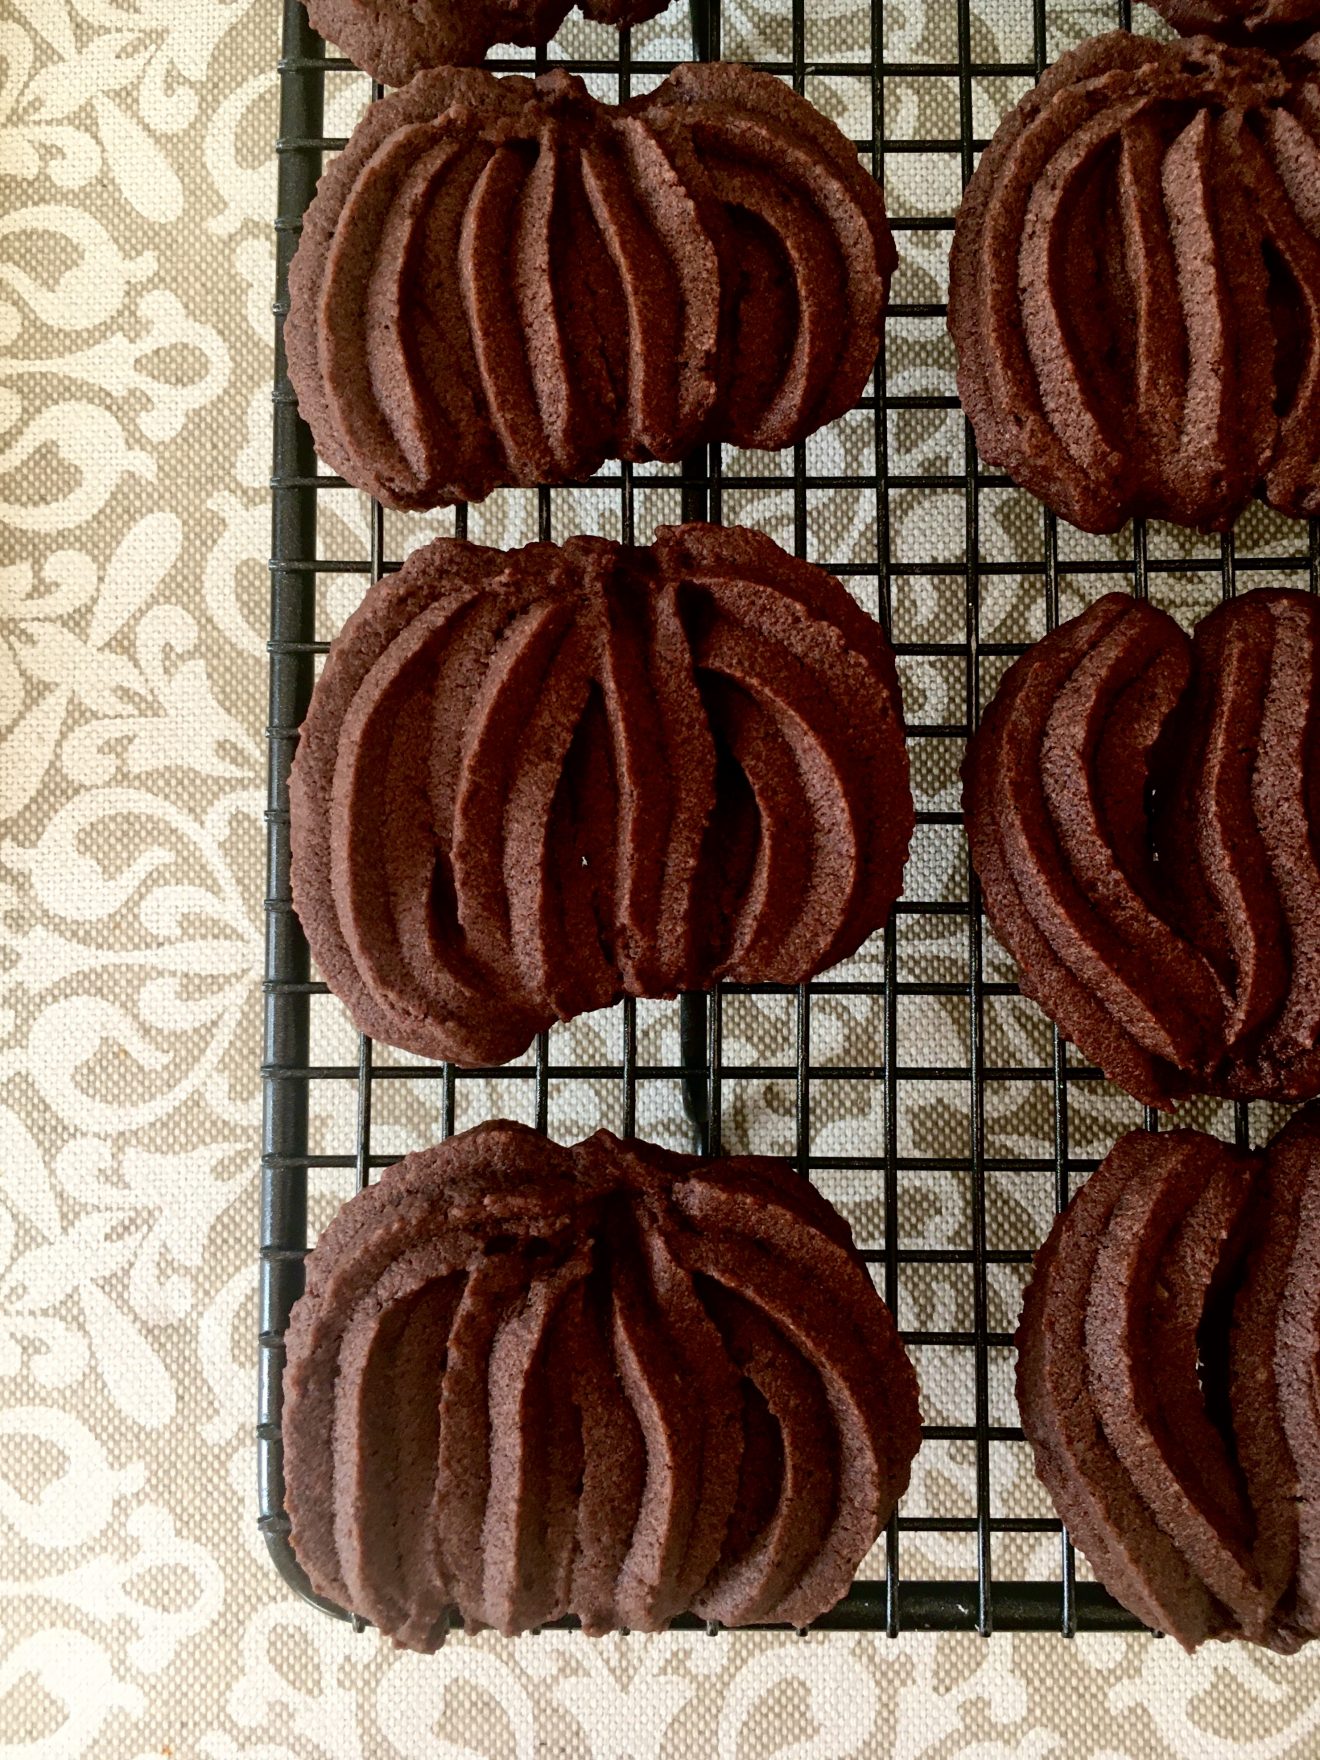 Galletas de chocolate rellenas de crema de avellanas y cacao. Aroma de chocolate